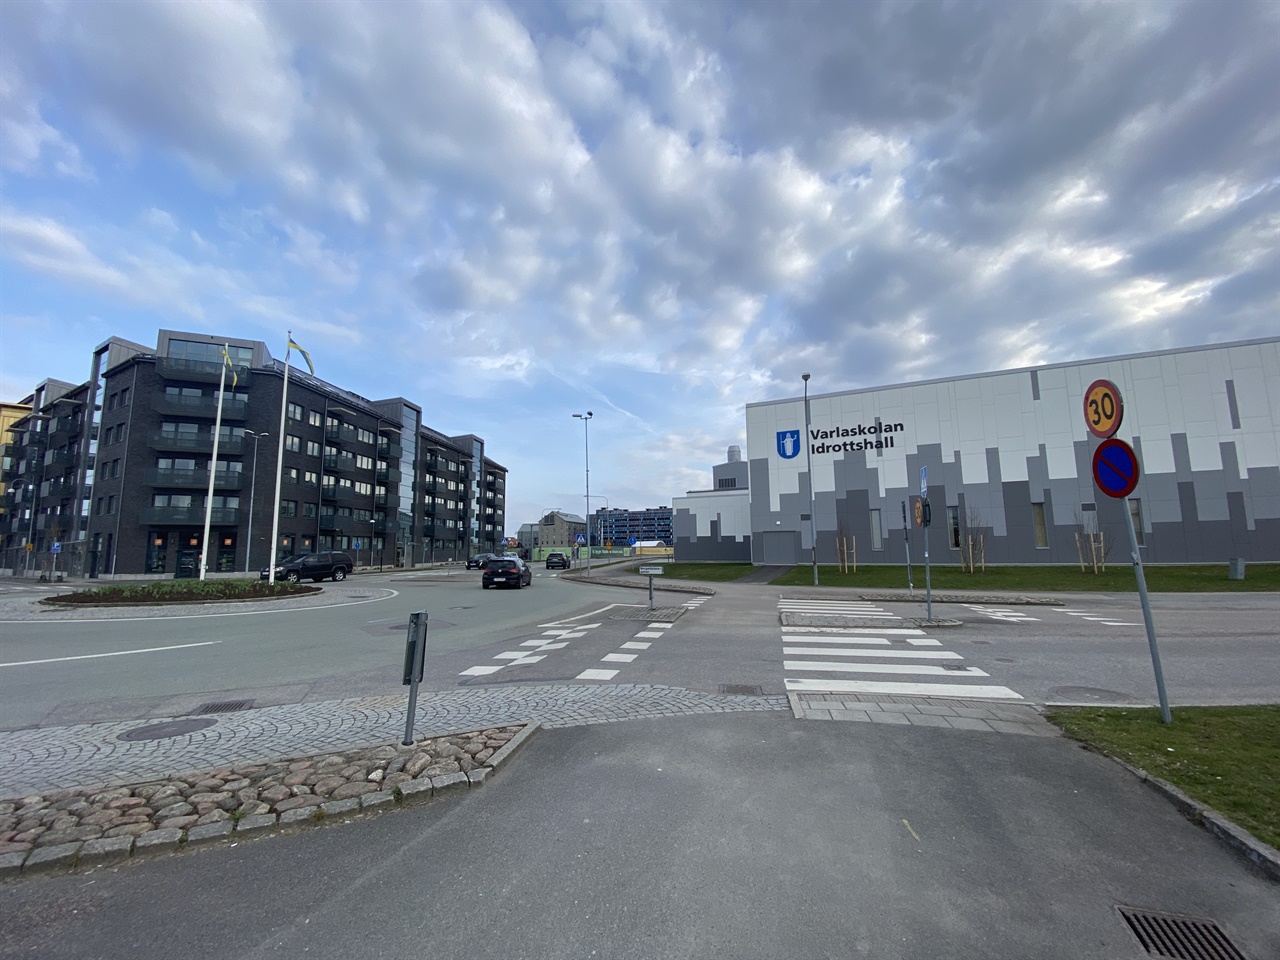 스웨덴 한 초등학교 스쿨존 모습. 30km 속도 제한 표시판과 회전교차로를 볼 수 있다. 